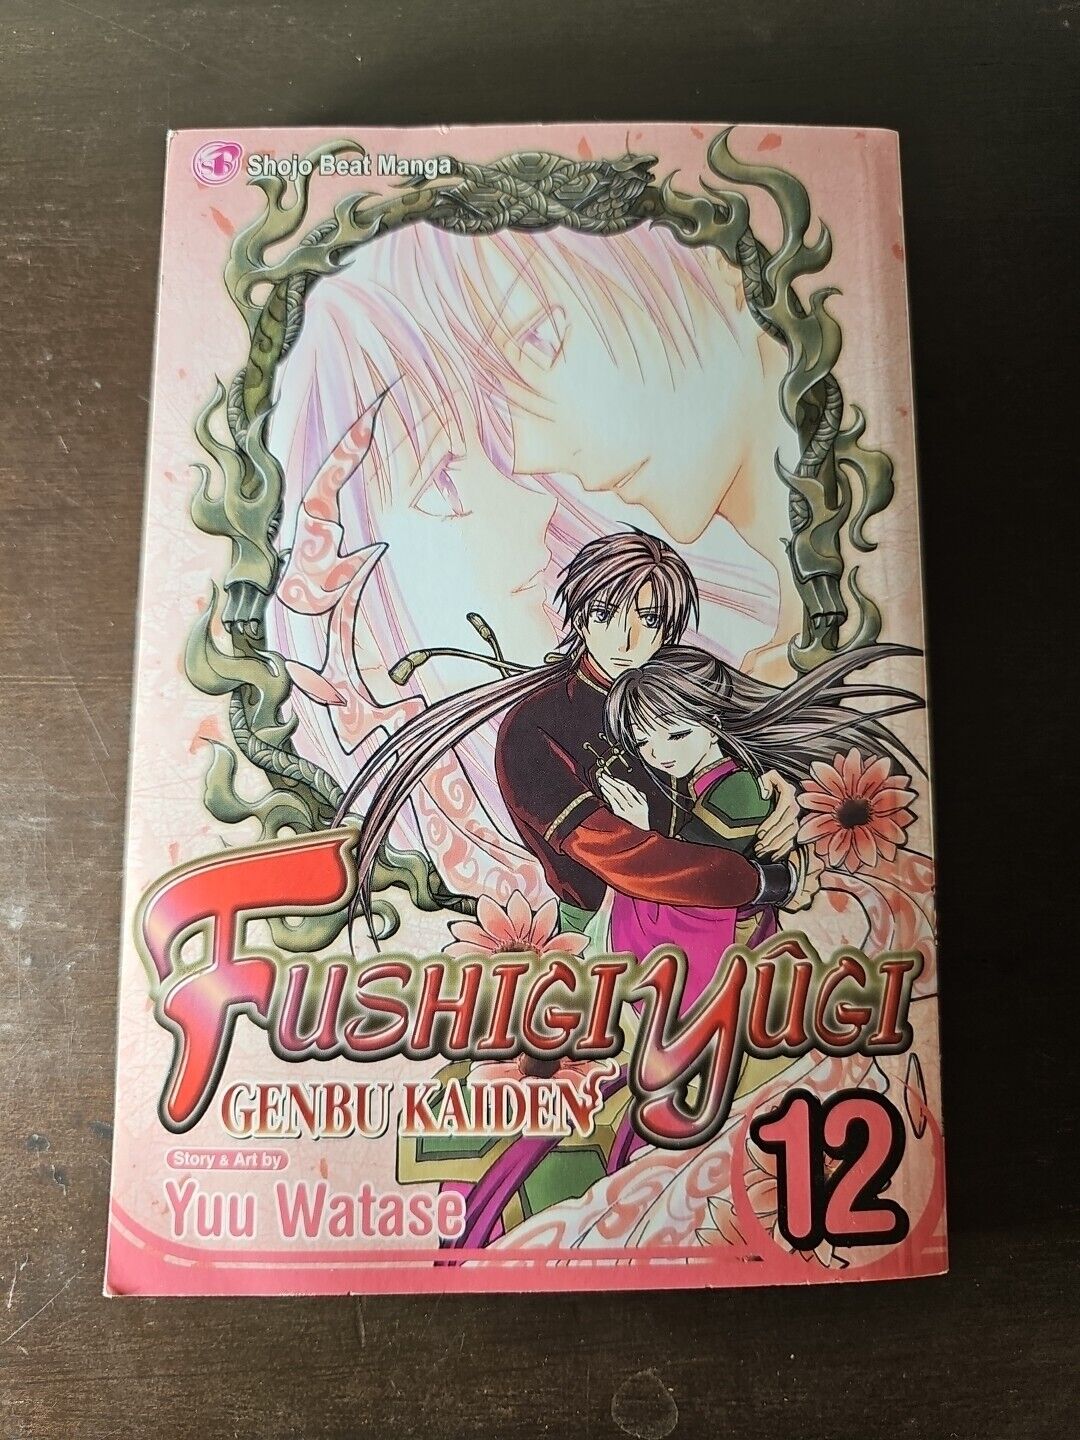 New Fushigi Yugi Genbu Kaiden Volume 12 Manga OOP 2014 English 9781421564340